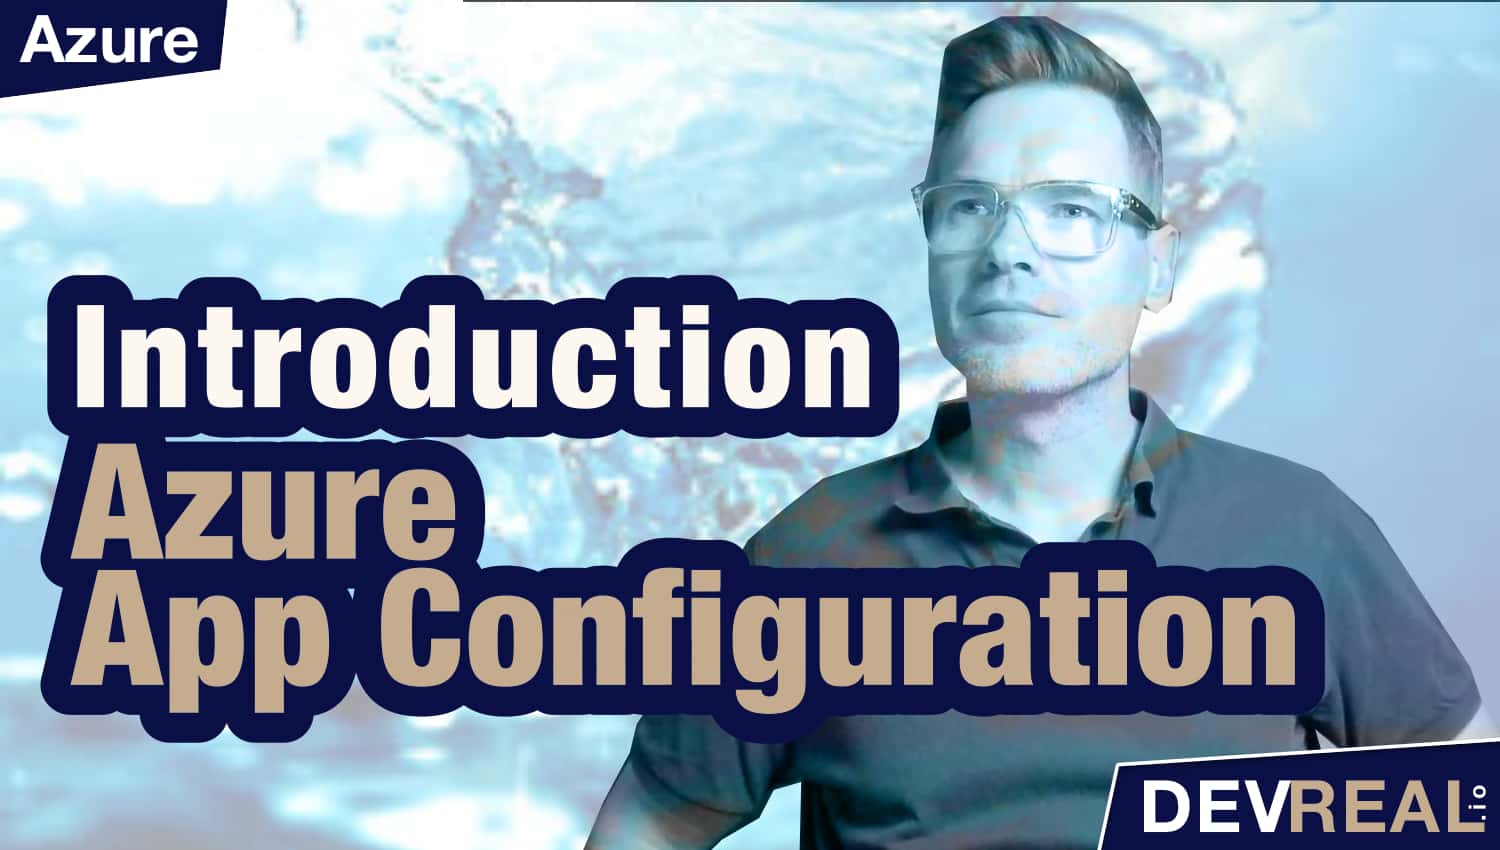 Azure App Configuration Introduction